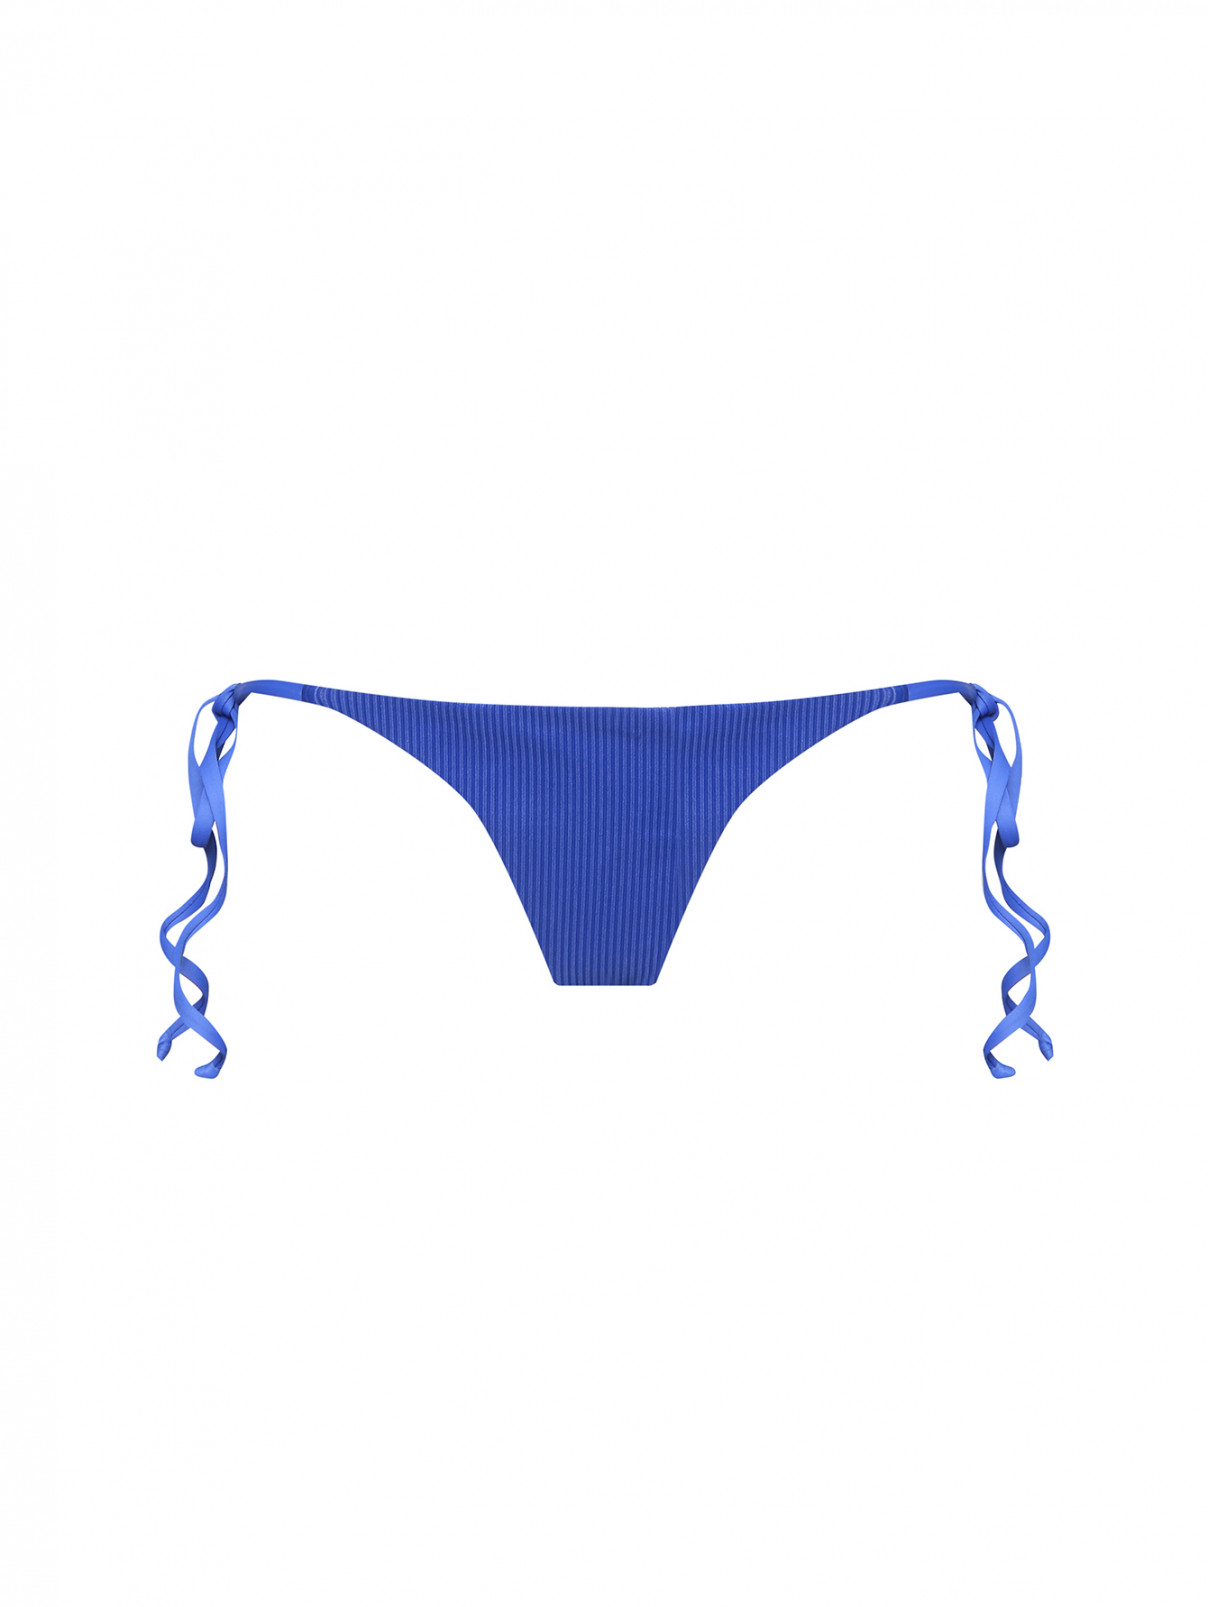 Купальник низ на завязках Frankies Bikinis  –  Общий вид  – Цвет:  Синий